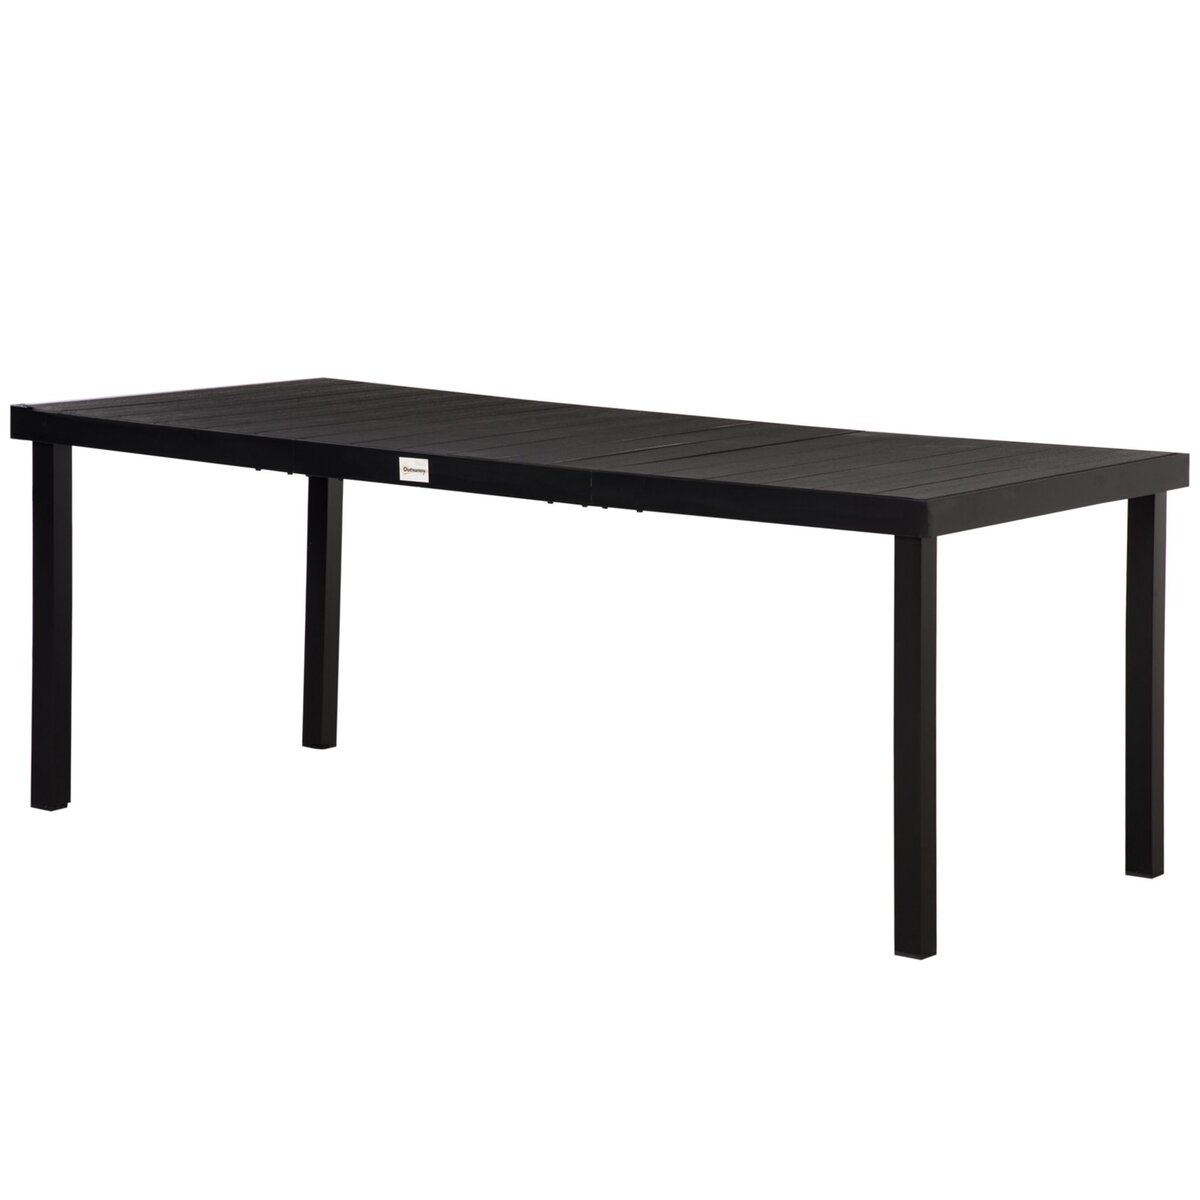 OUTSUNNY Table de jardin rectangulaire pour 8 personnes en aluminium plateau PE à lattes aspect bois dim. 190L x 90l x 74H cm noir